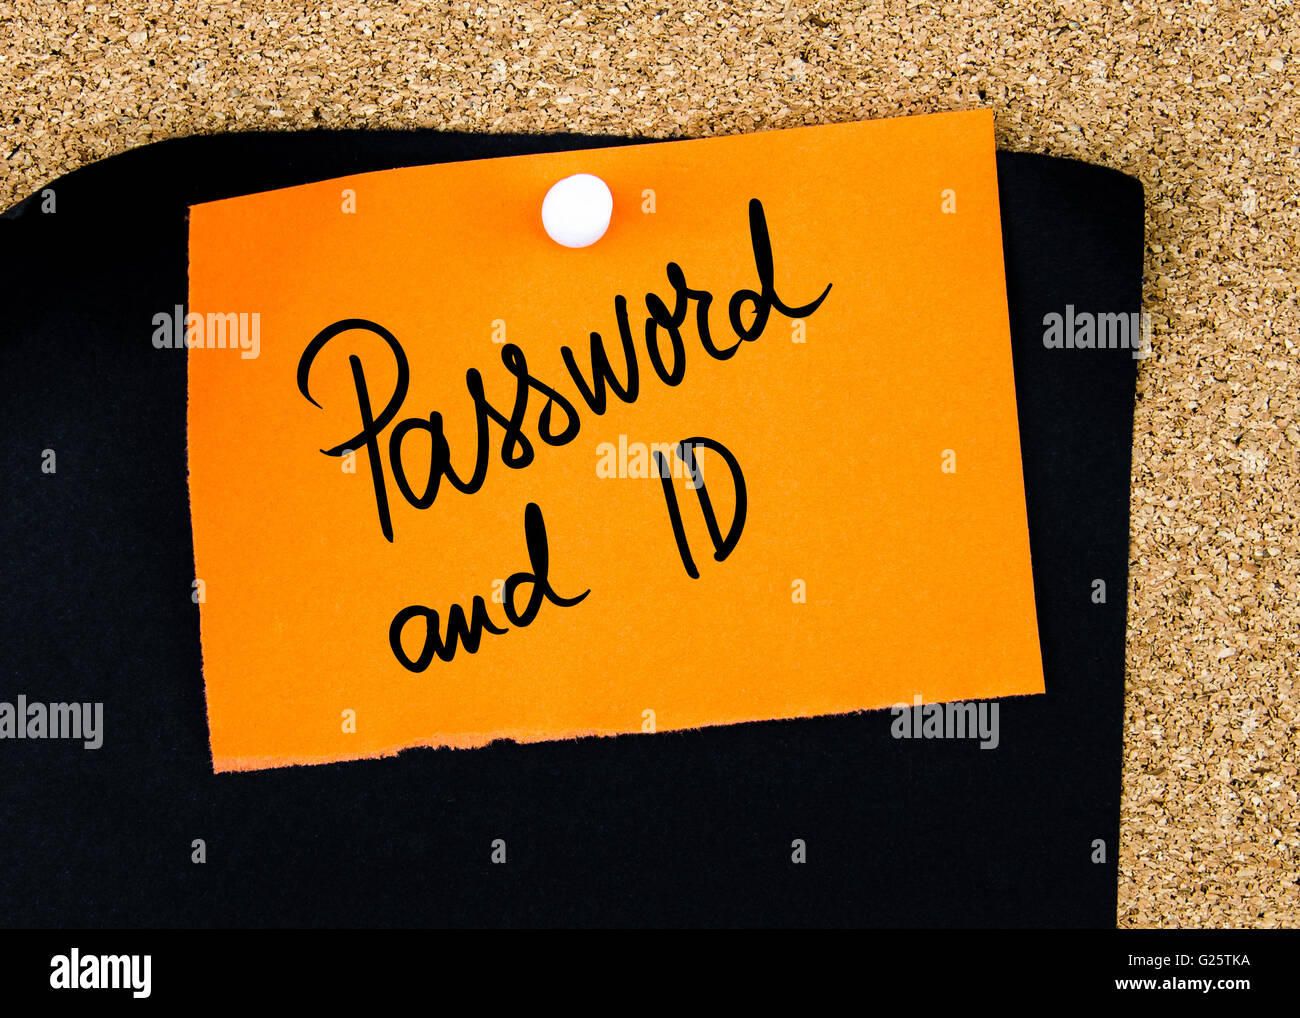 Password e ID scritto sulla carta arancione nota appuntata sulla bacheca di sughero con il bianco thumbtacks, copia dello spazio disponibile Foto Stock